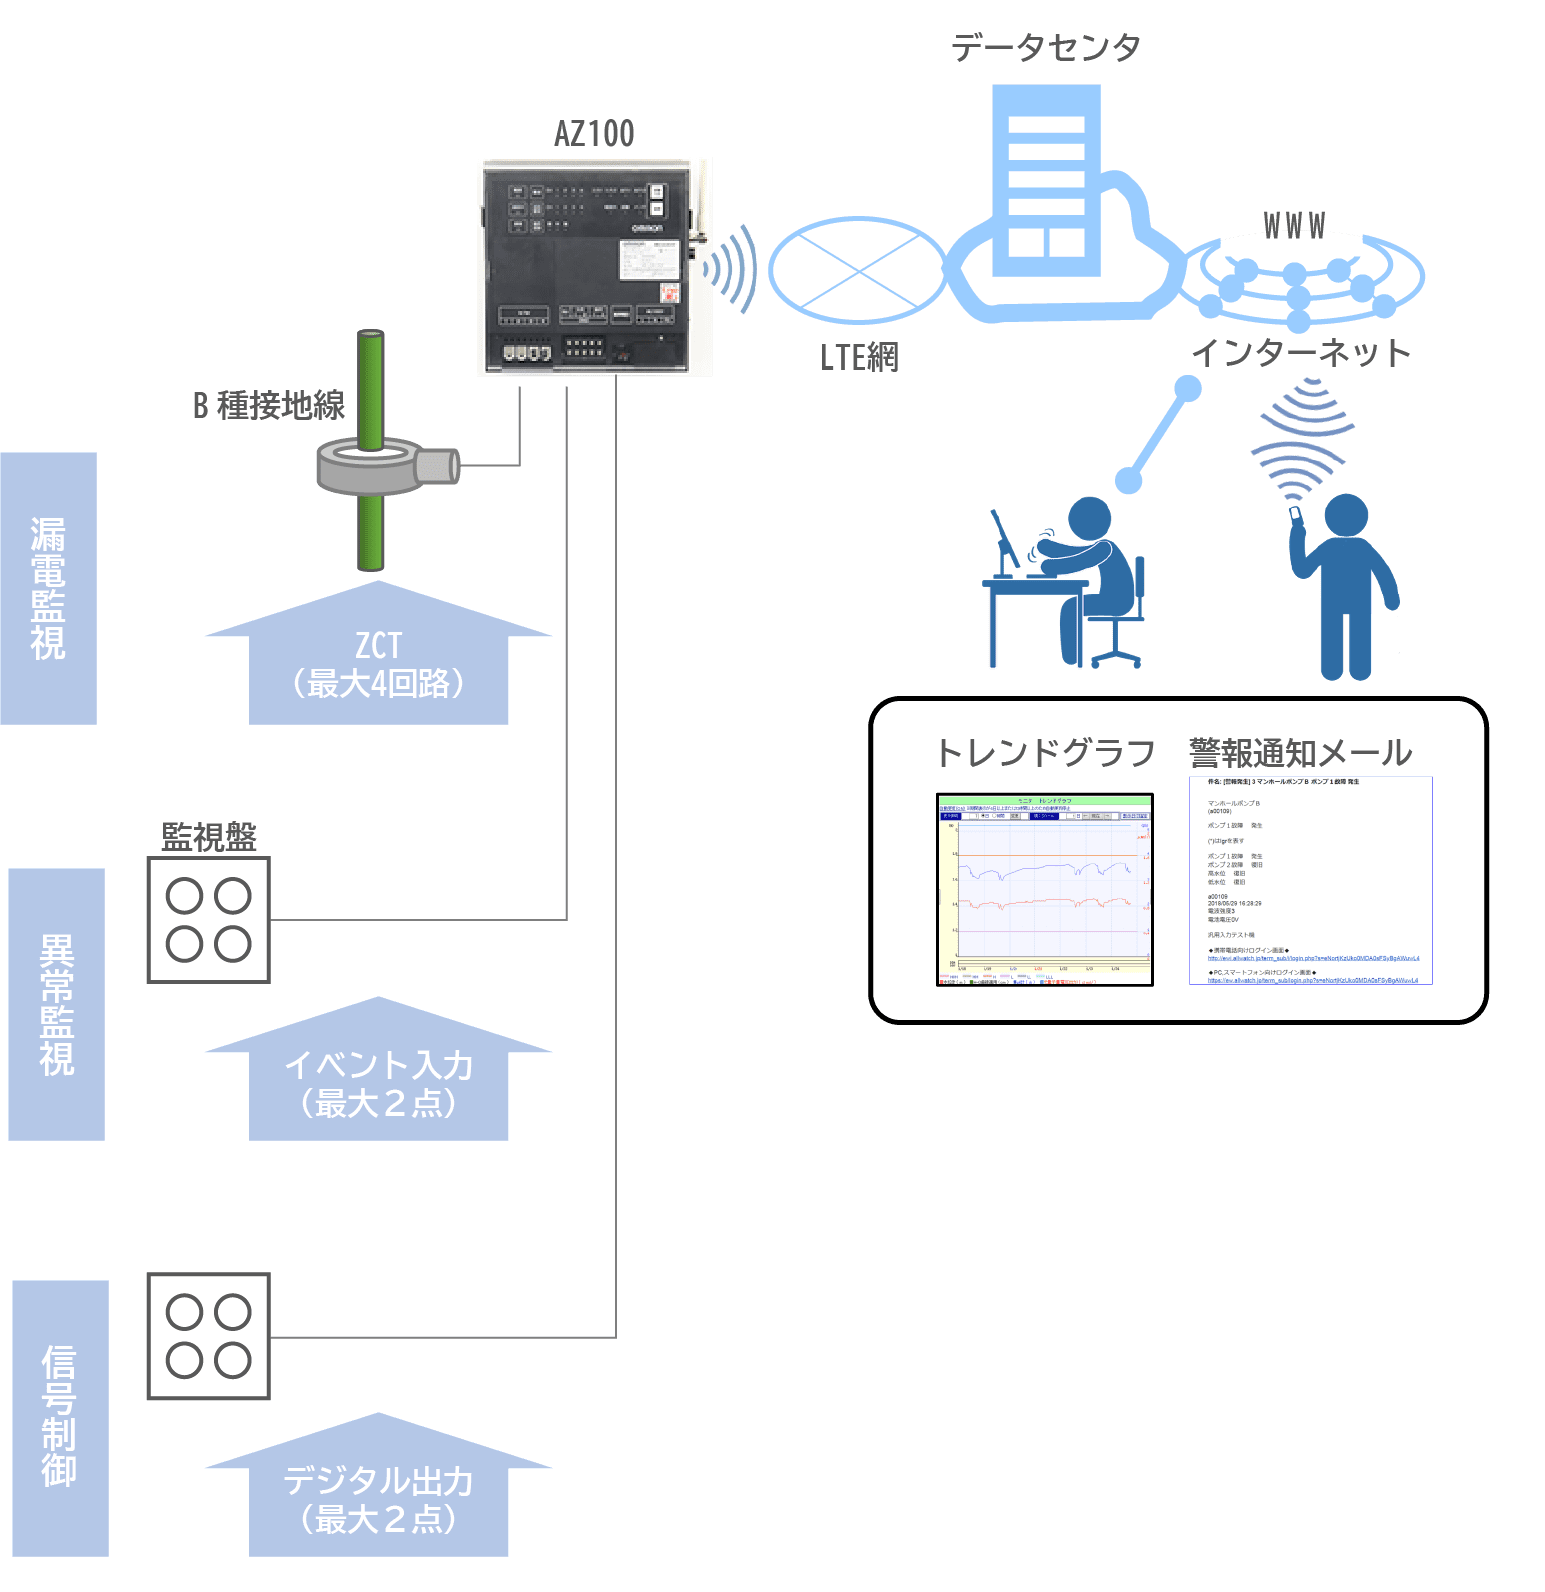 漏電監視:B種接地線 ZCT（最大4回路）、異常監視 監視盤 イベント入力（最大2点）、信号制御:デジタル出力（最大2点）→LTE網、データセンタ、WWW、インターネット、警報通知メール